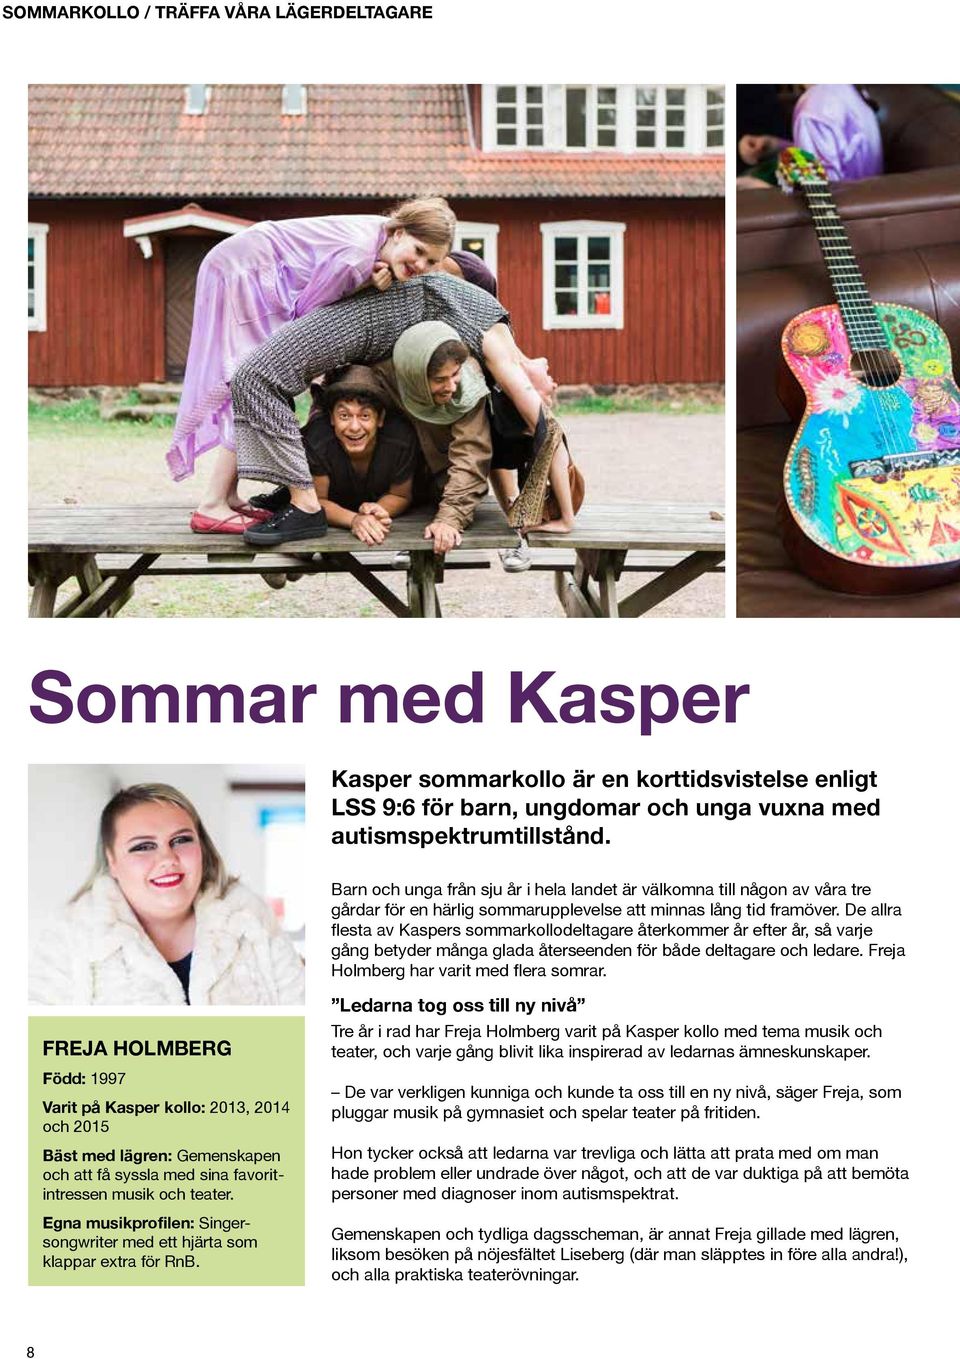 De allra flesta av Kaspers sommarkollodeltagare återkommer år efter år, så varje gång betyder många glada återseenden för både deltagare och ledare. Freja Holmberg har varit med flera somrar.